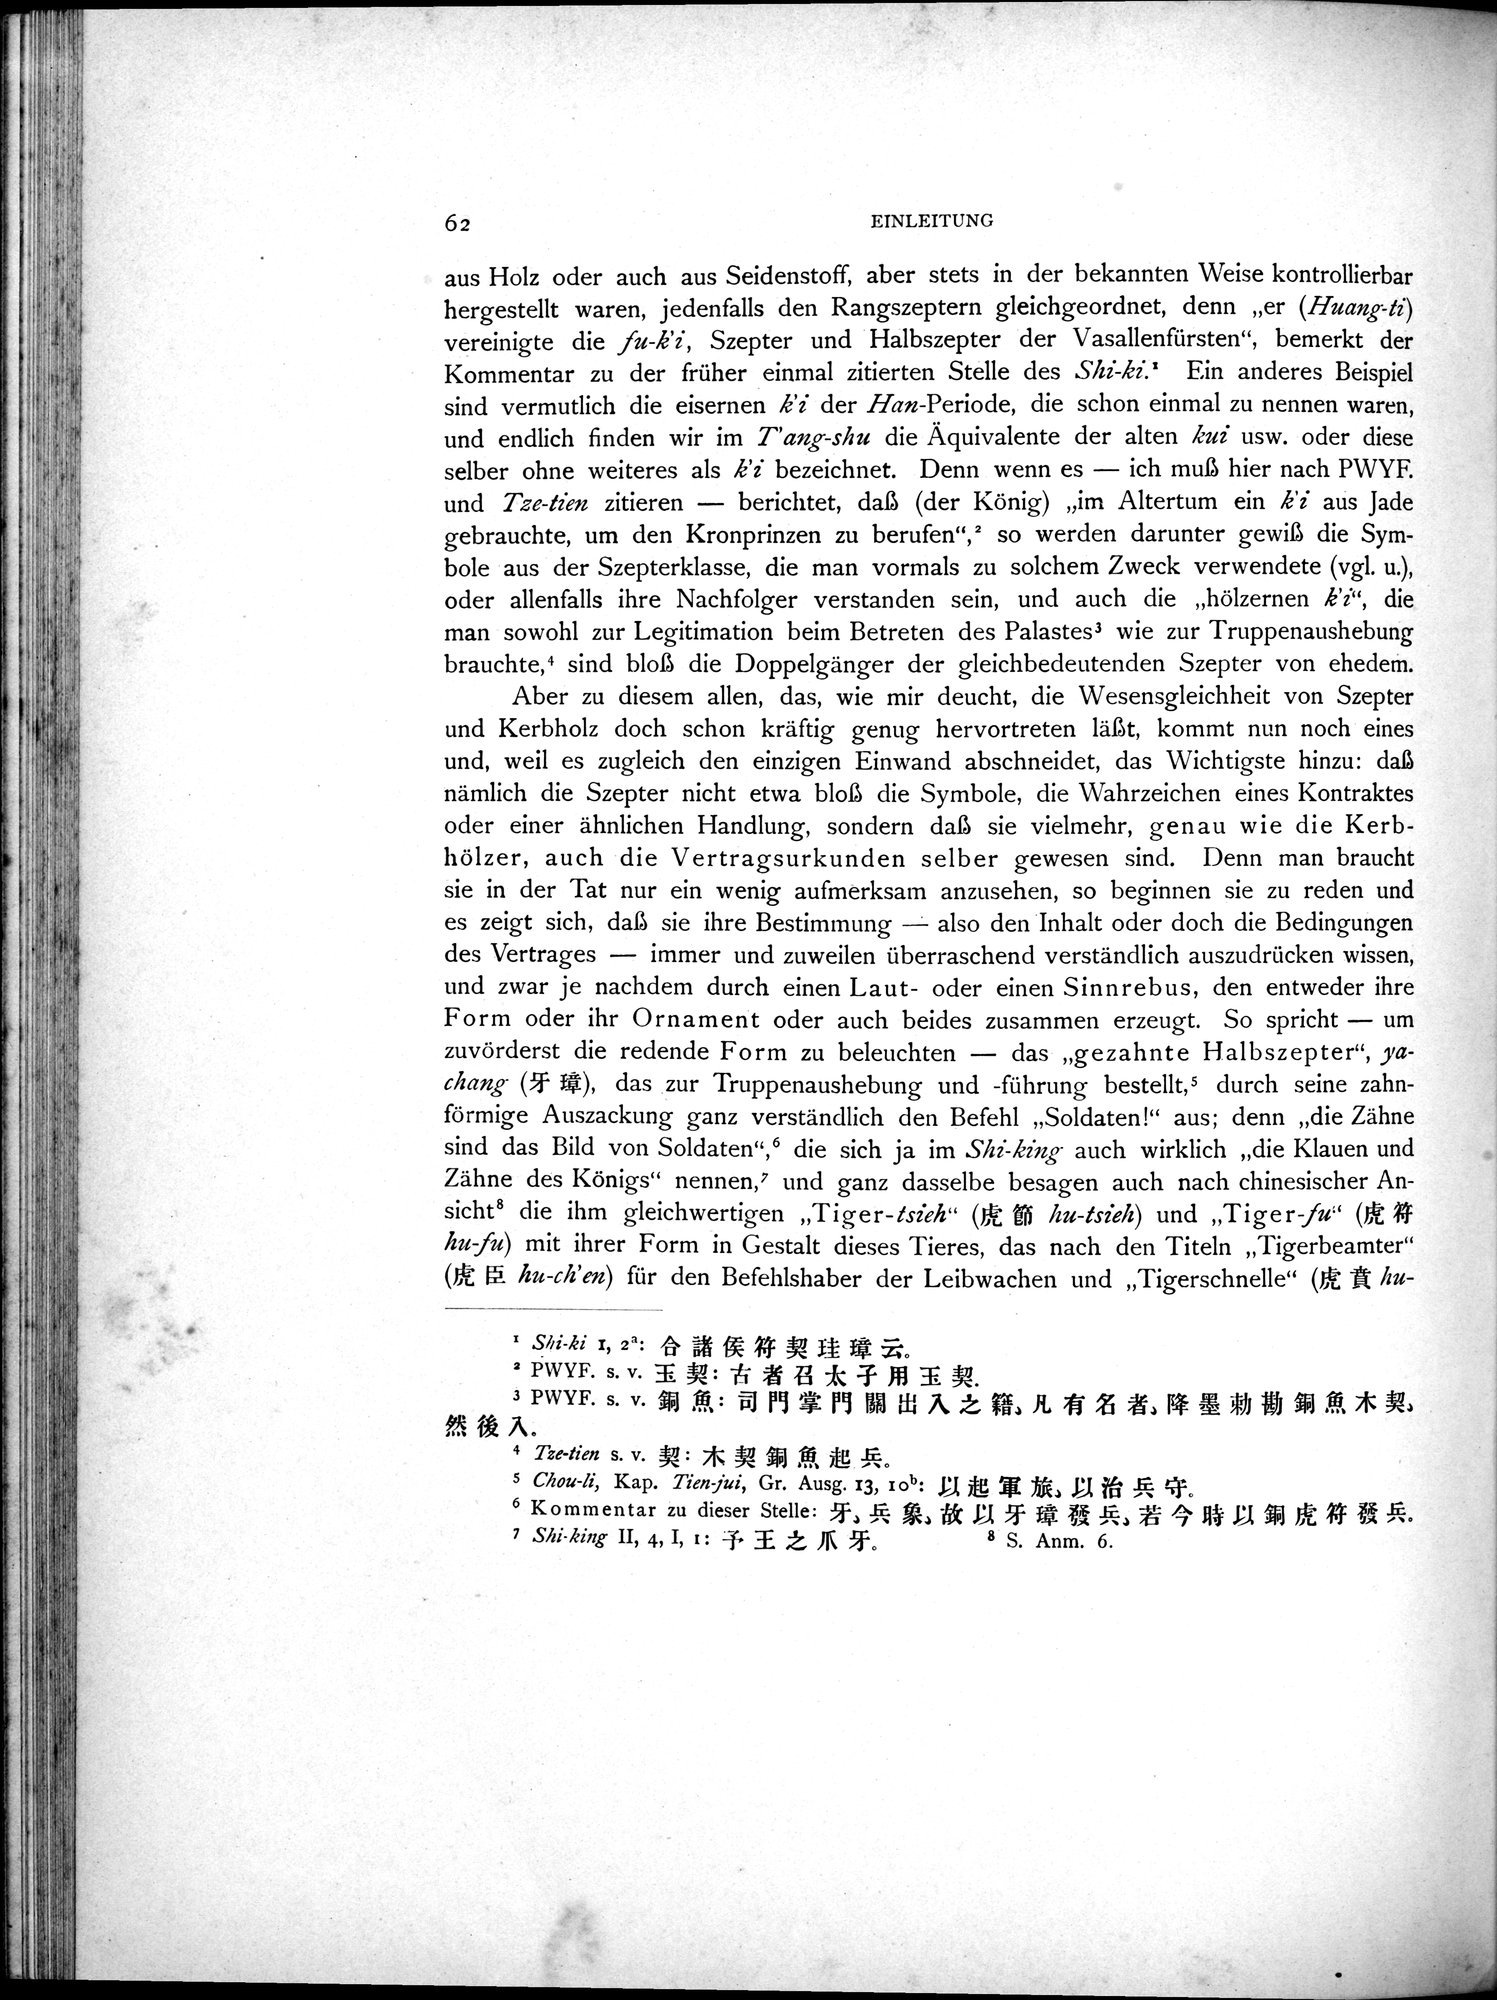 Die Chinesischen Handschriften- und sonstigen Kleinfunde Sven Hedins in Lou-lan : vol.1 / Page 86 (Grayscale High Resolution Image)